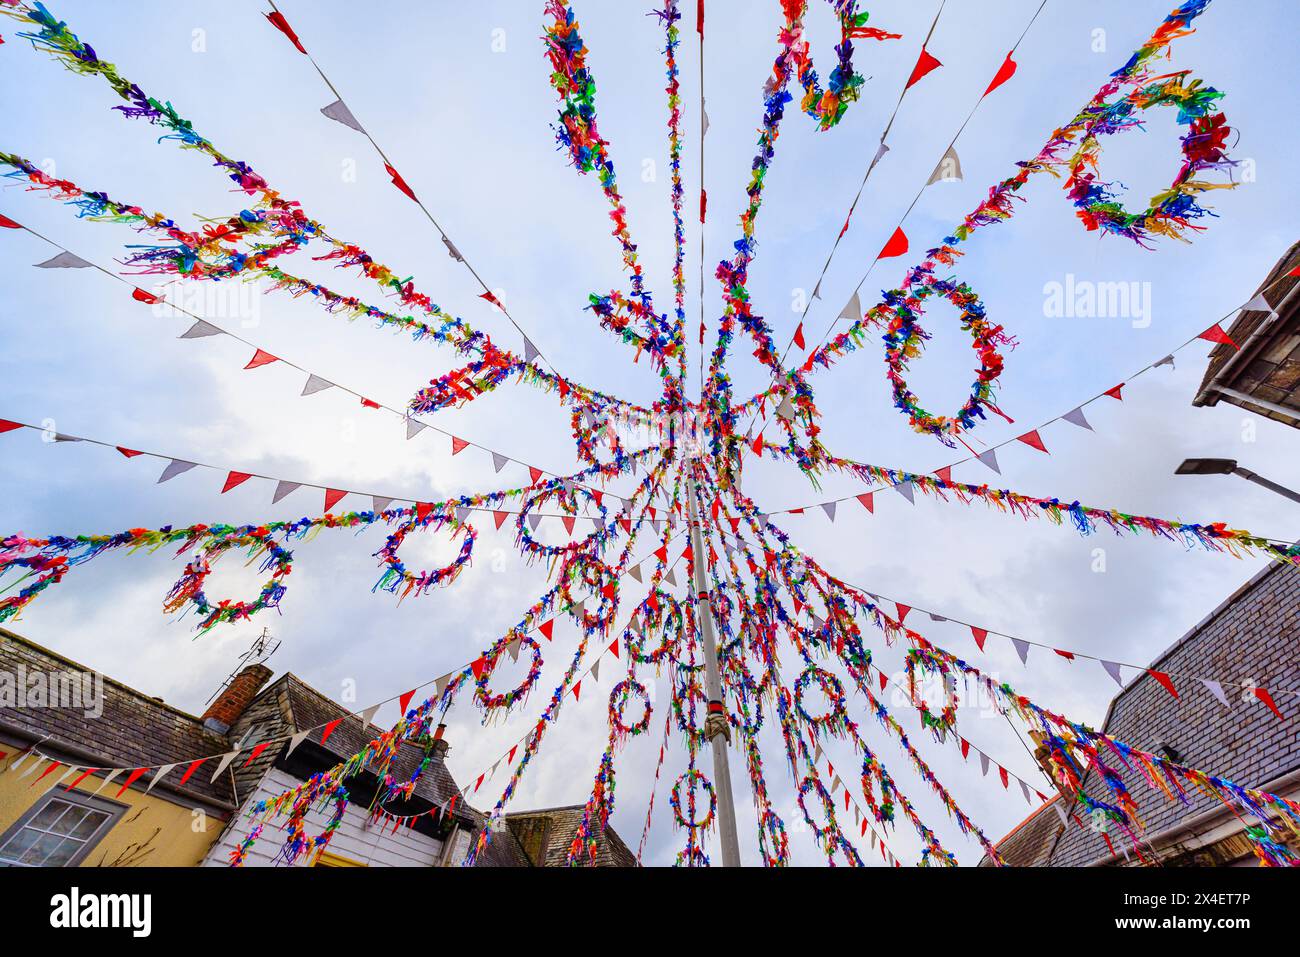 La colorata maypole per il festival 'Obby' Oss, un tradizionale festival folk annuale il giorno di maggio a Padstow, una città costiera nella Cornovaglia settentrionale, in Inghilterra Foto Stock